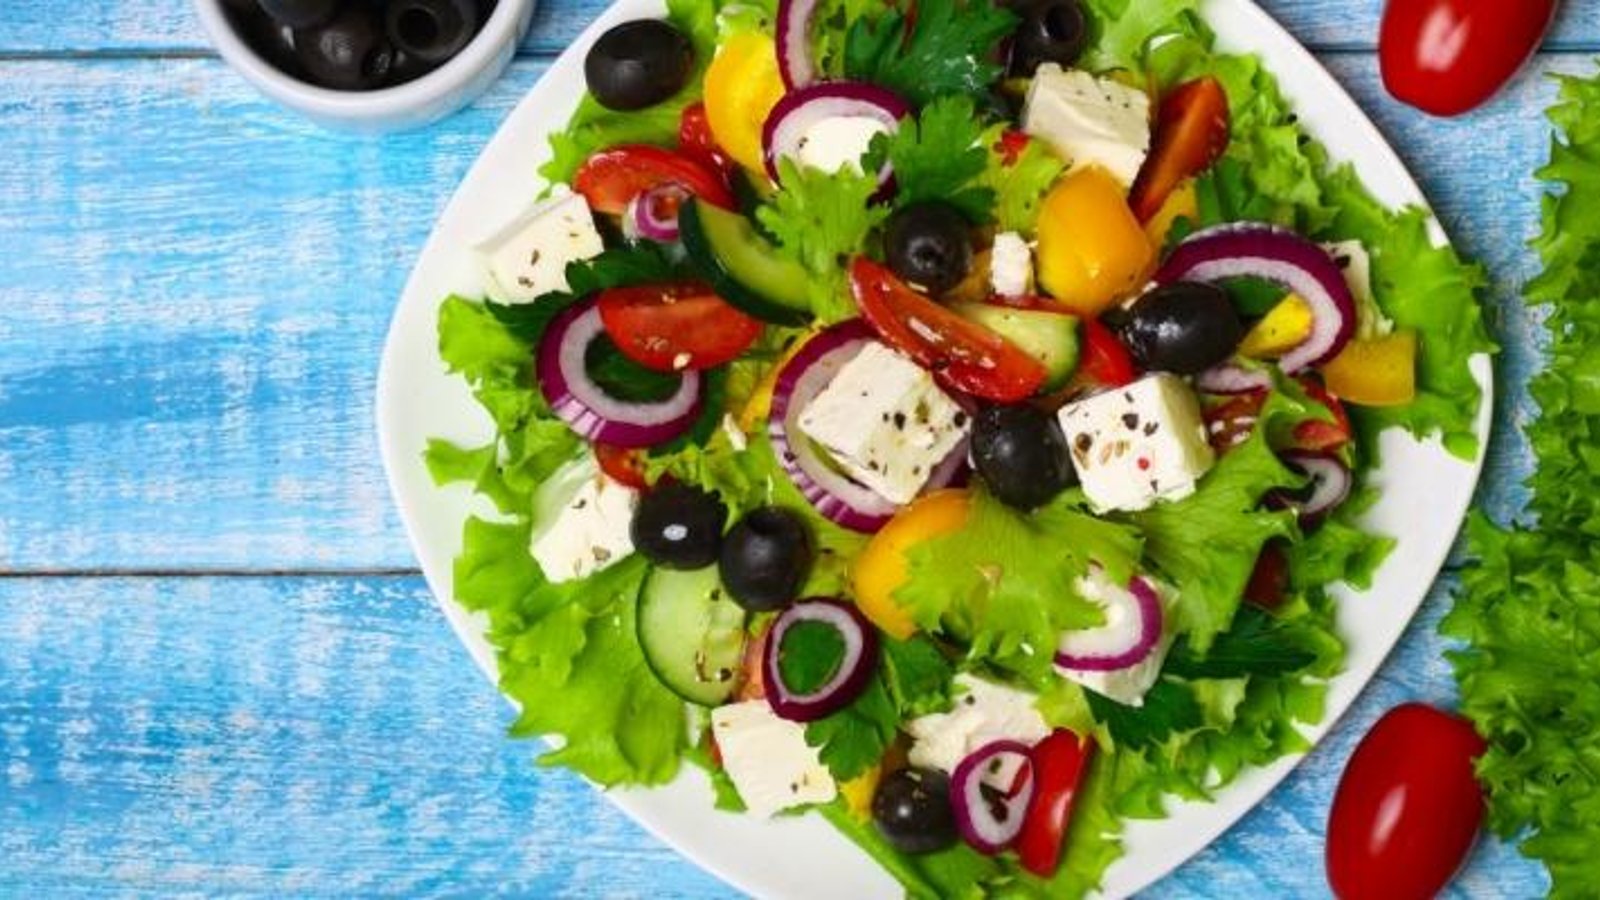 Cuisinez-la à la grecque...Voici une salade tout à fait irrésistible